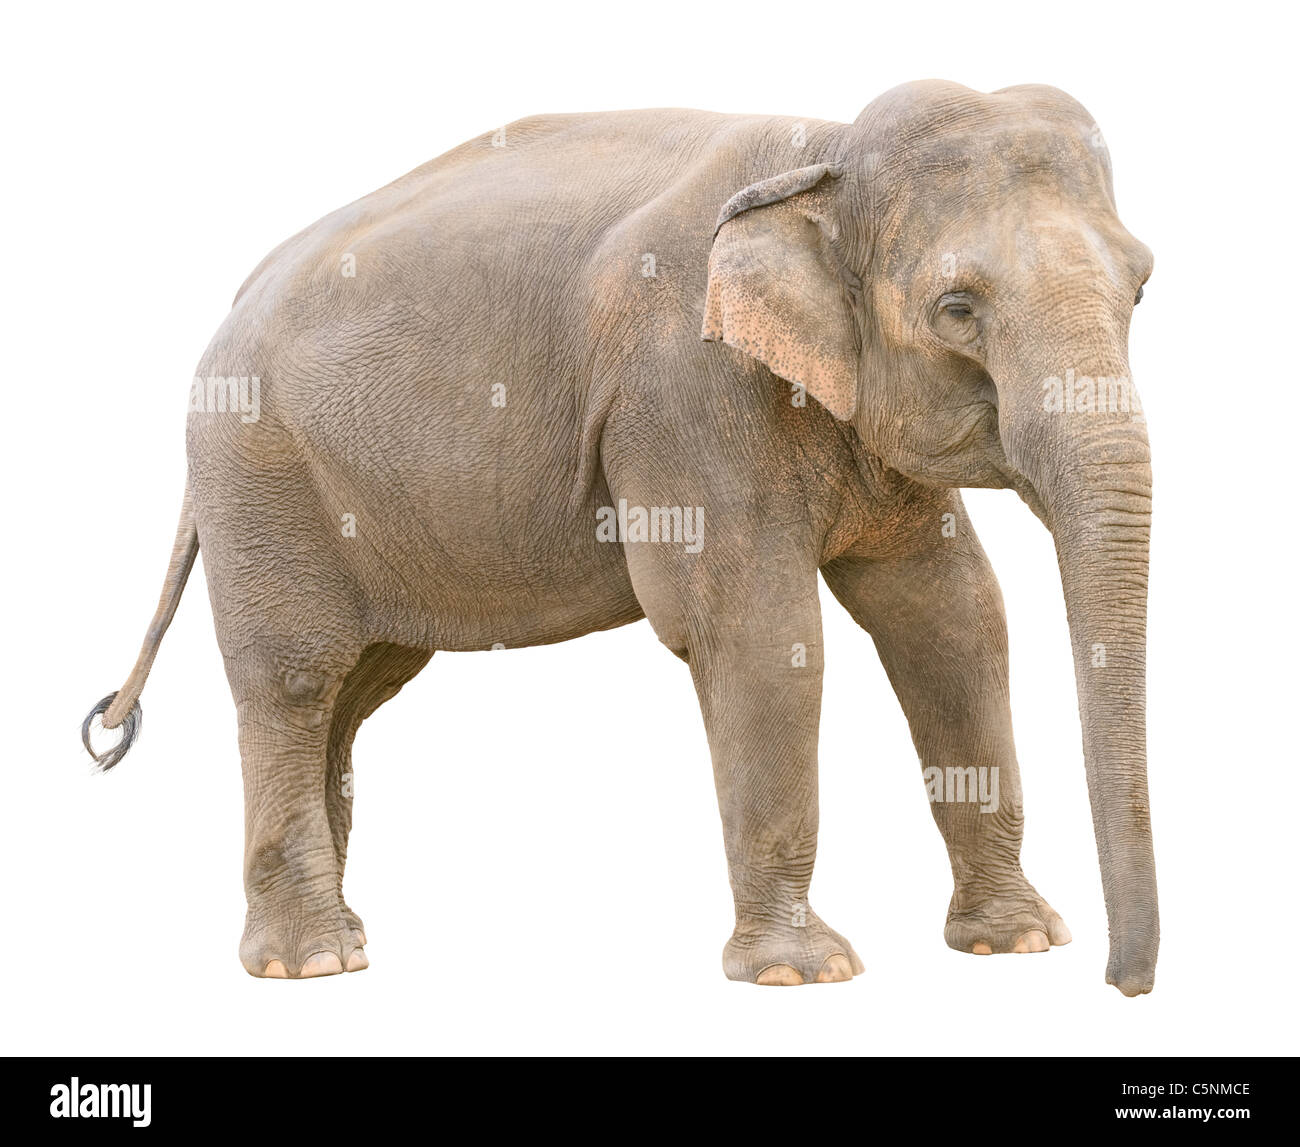 Elefante asiático joven aislado sobre fondo blanco. Foto de stock